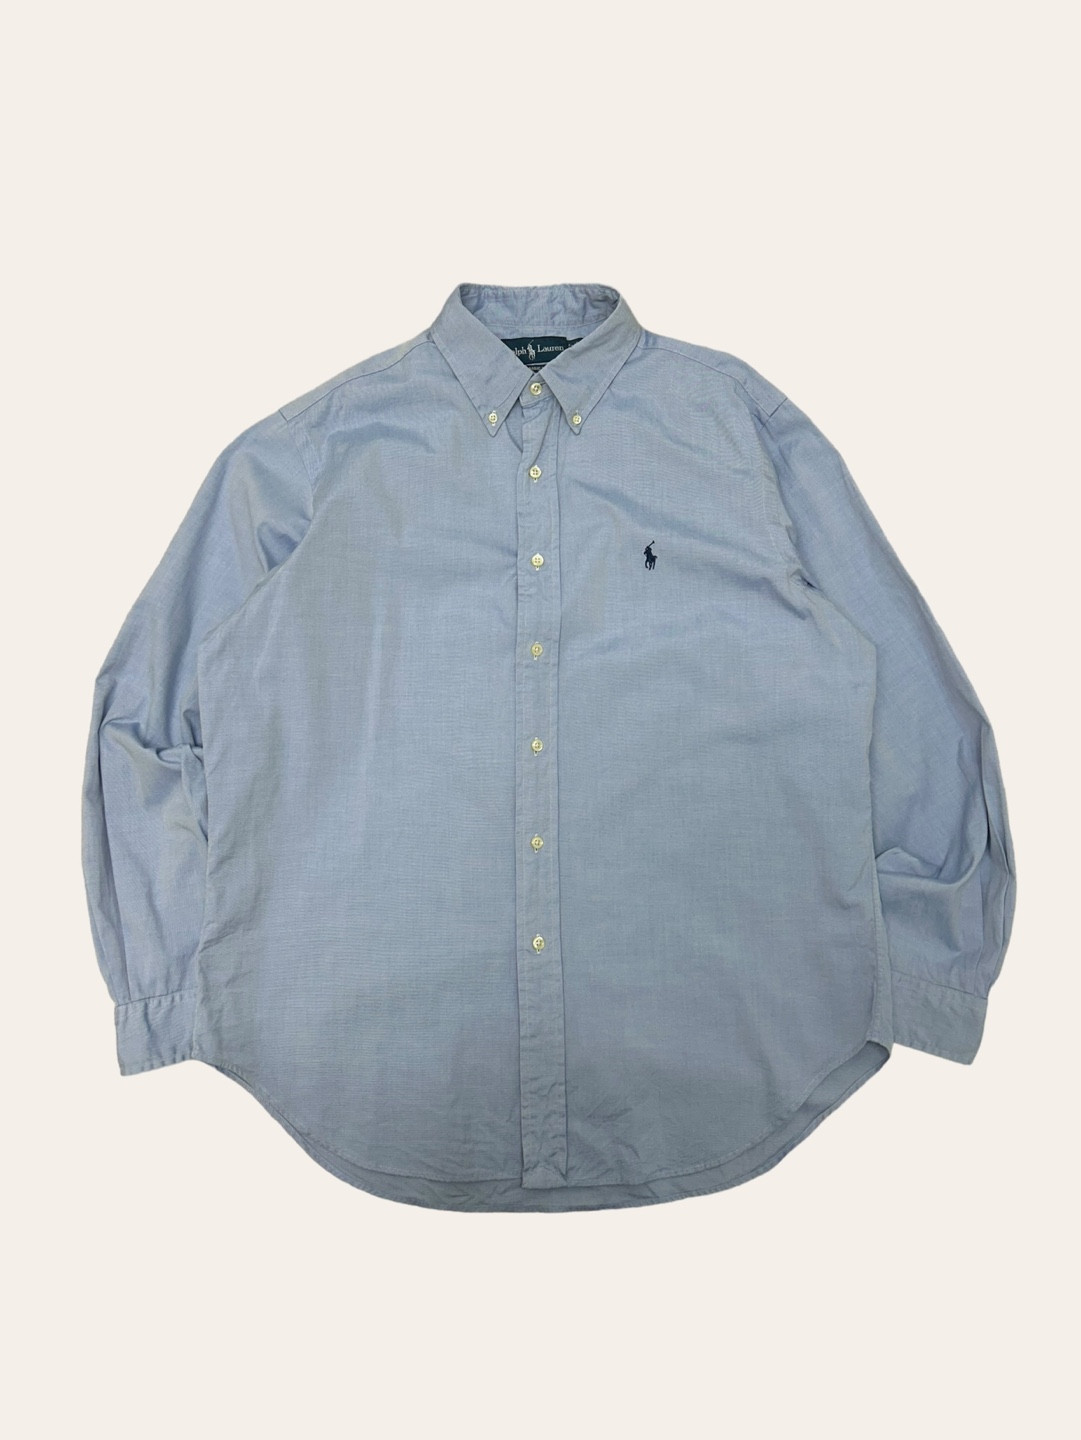 (From USA)Polo ralph lauren blue poplin shirt 16.5